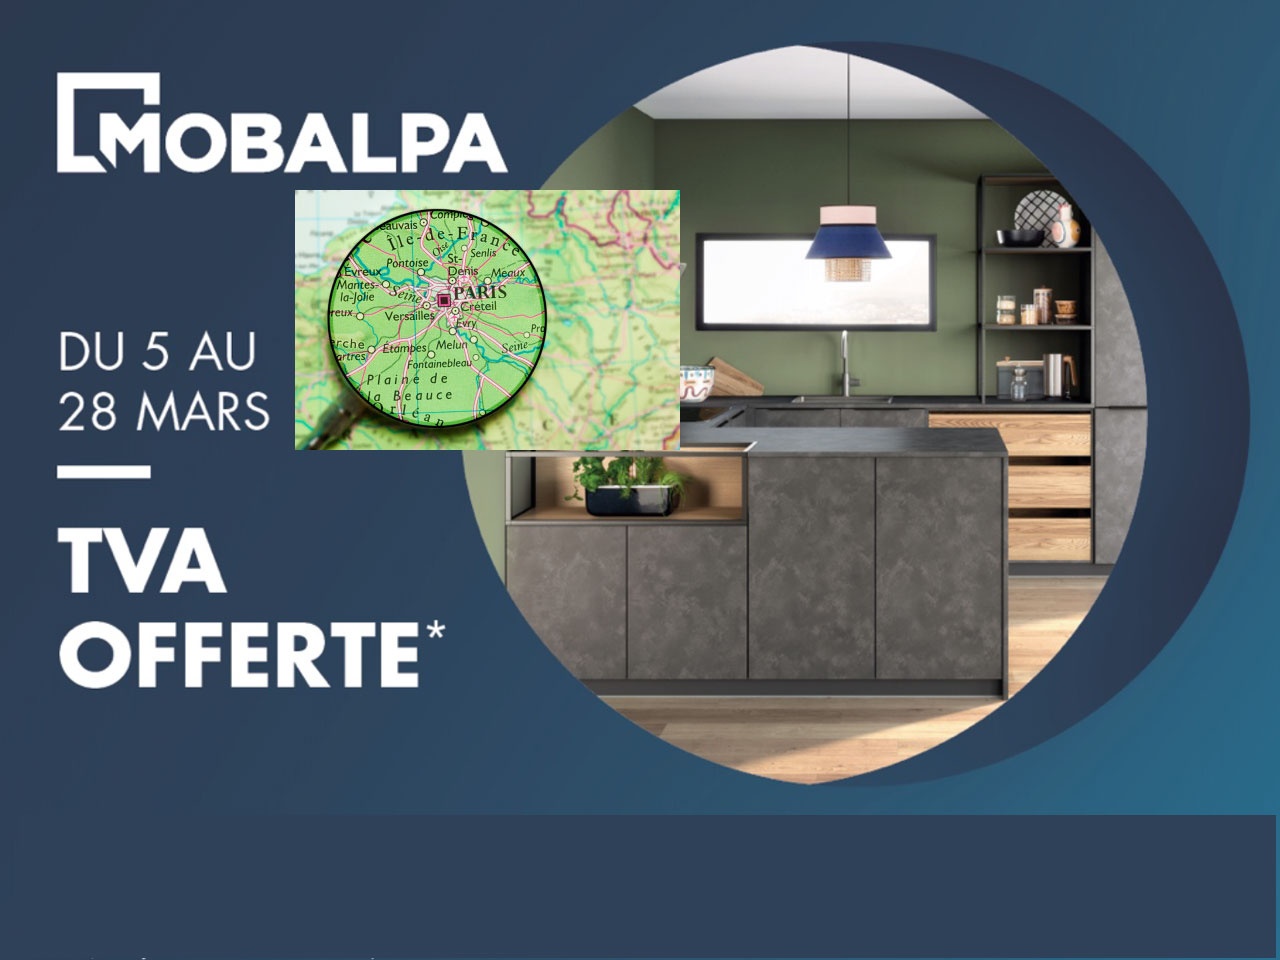 Le réseau Mobalpa mutualise sa communication en Île de France